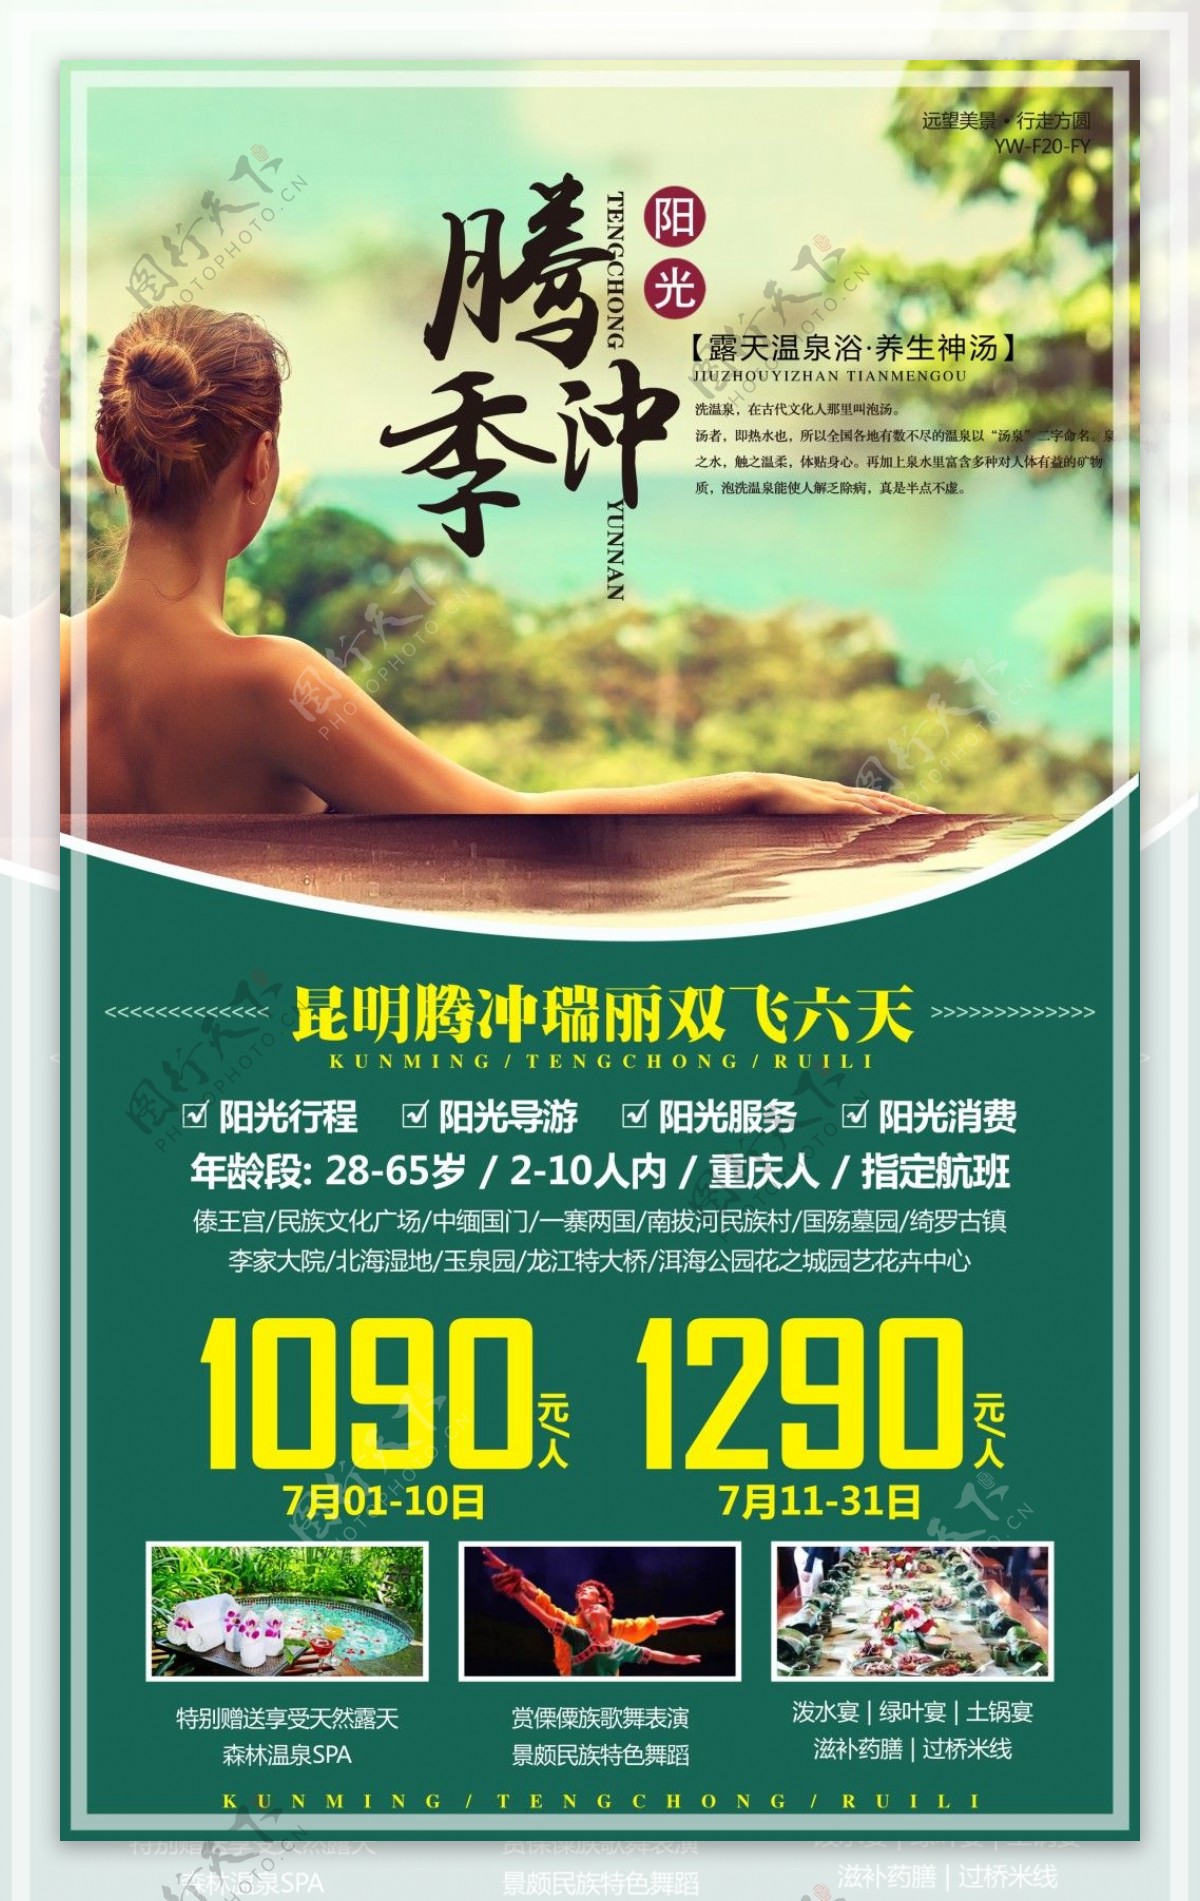 腾冲旅游广告宣传图